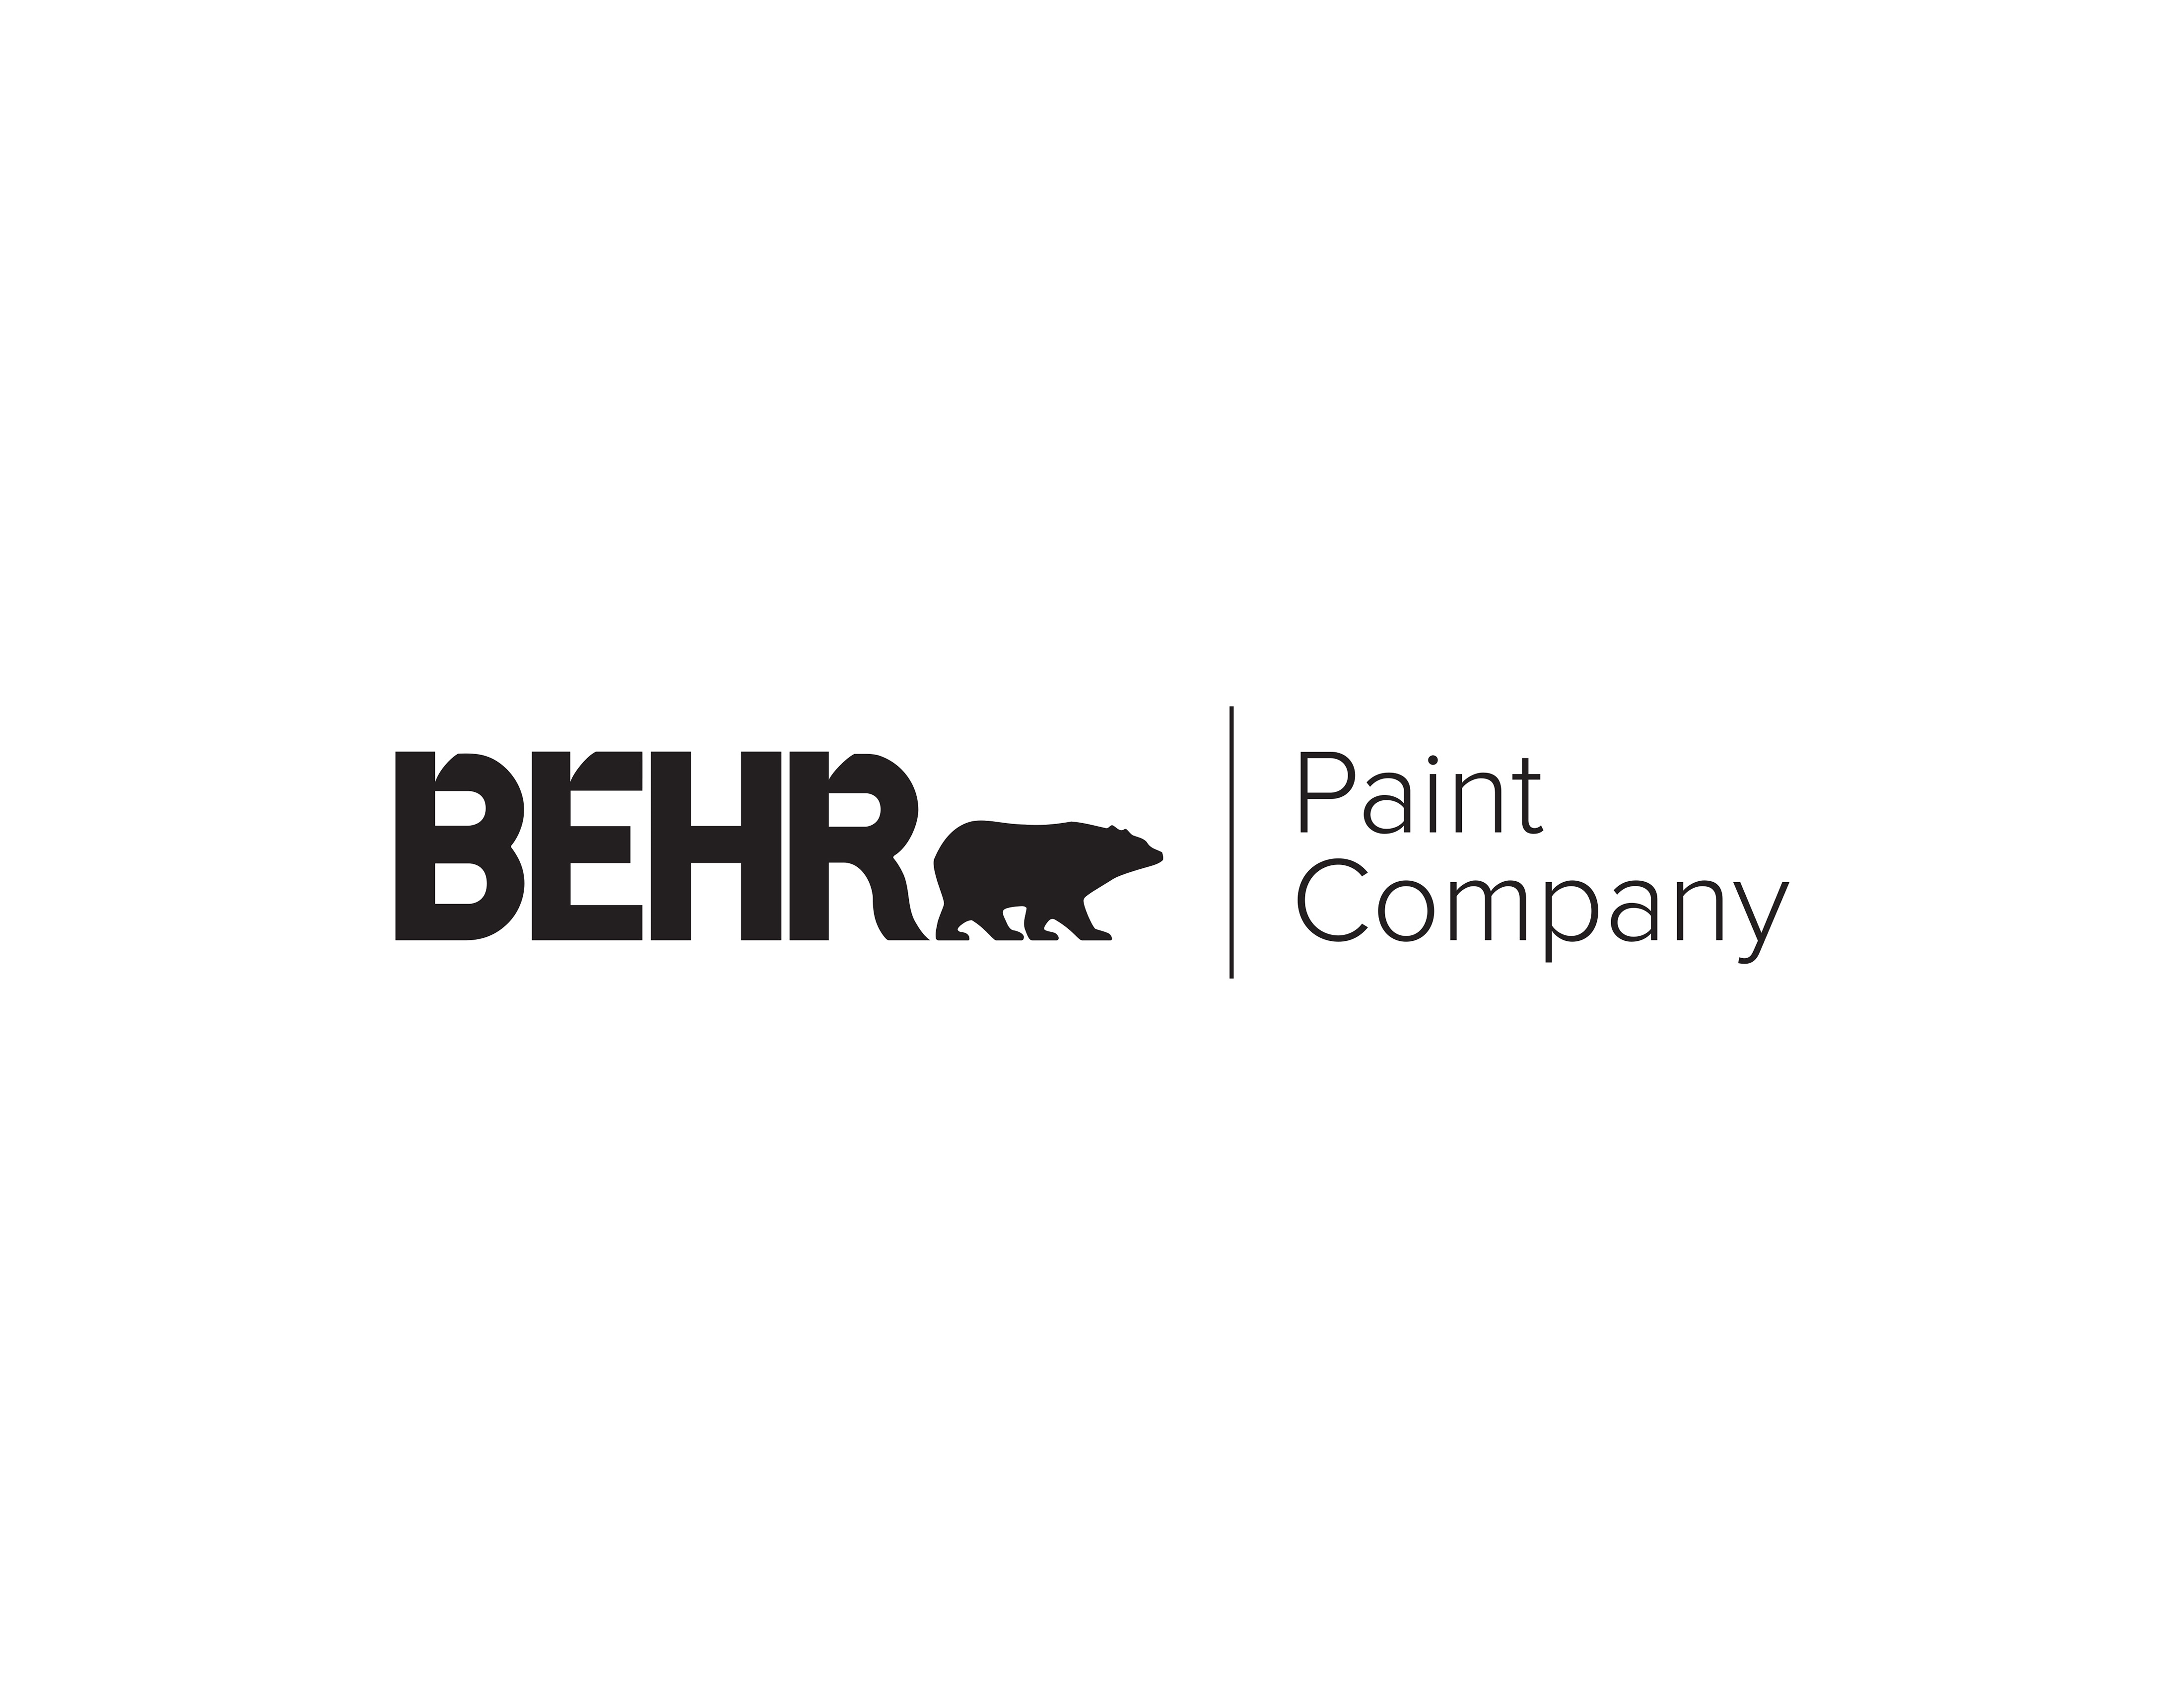 BEHR Paint Company logo